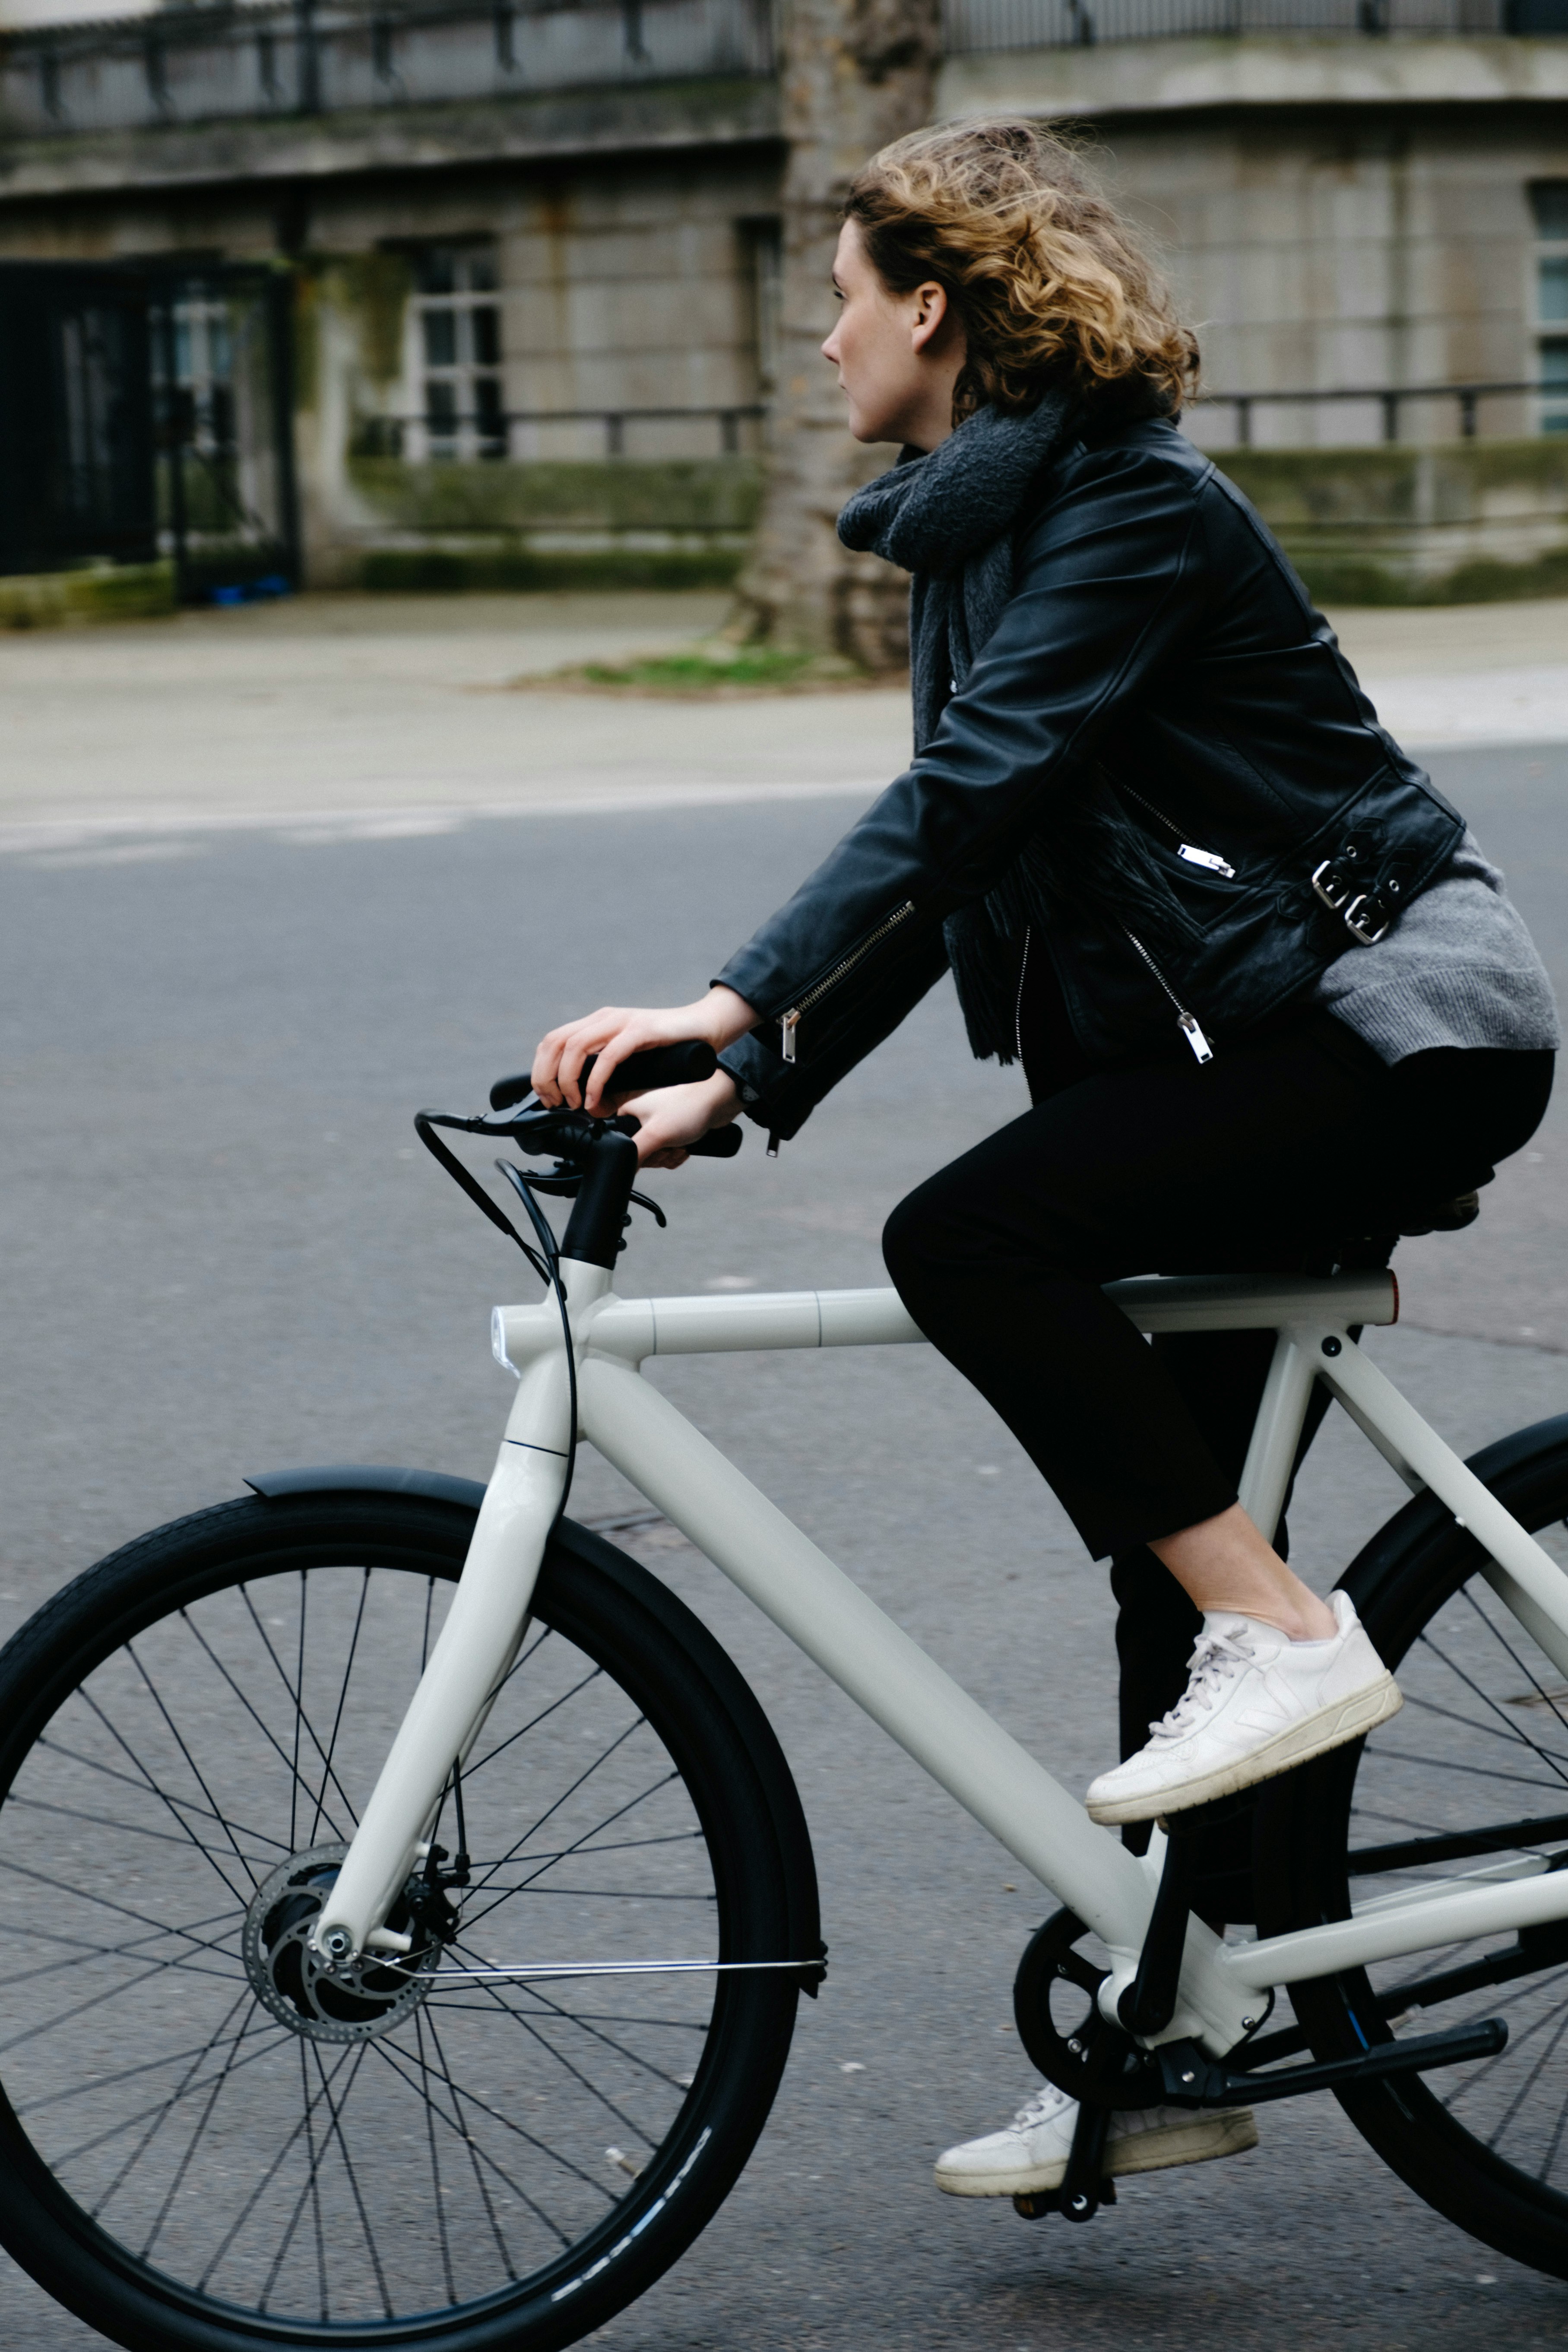 A girl riding a bike | Source: Unsplash